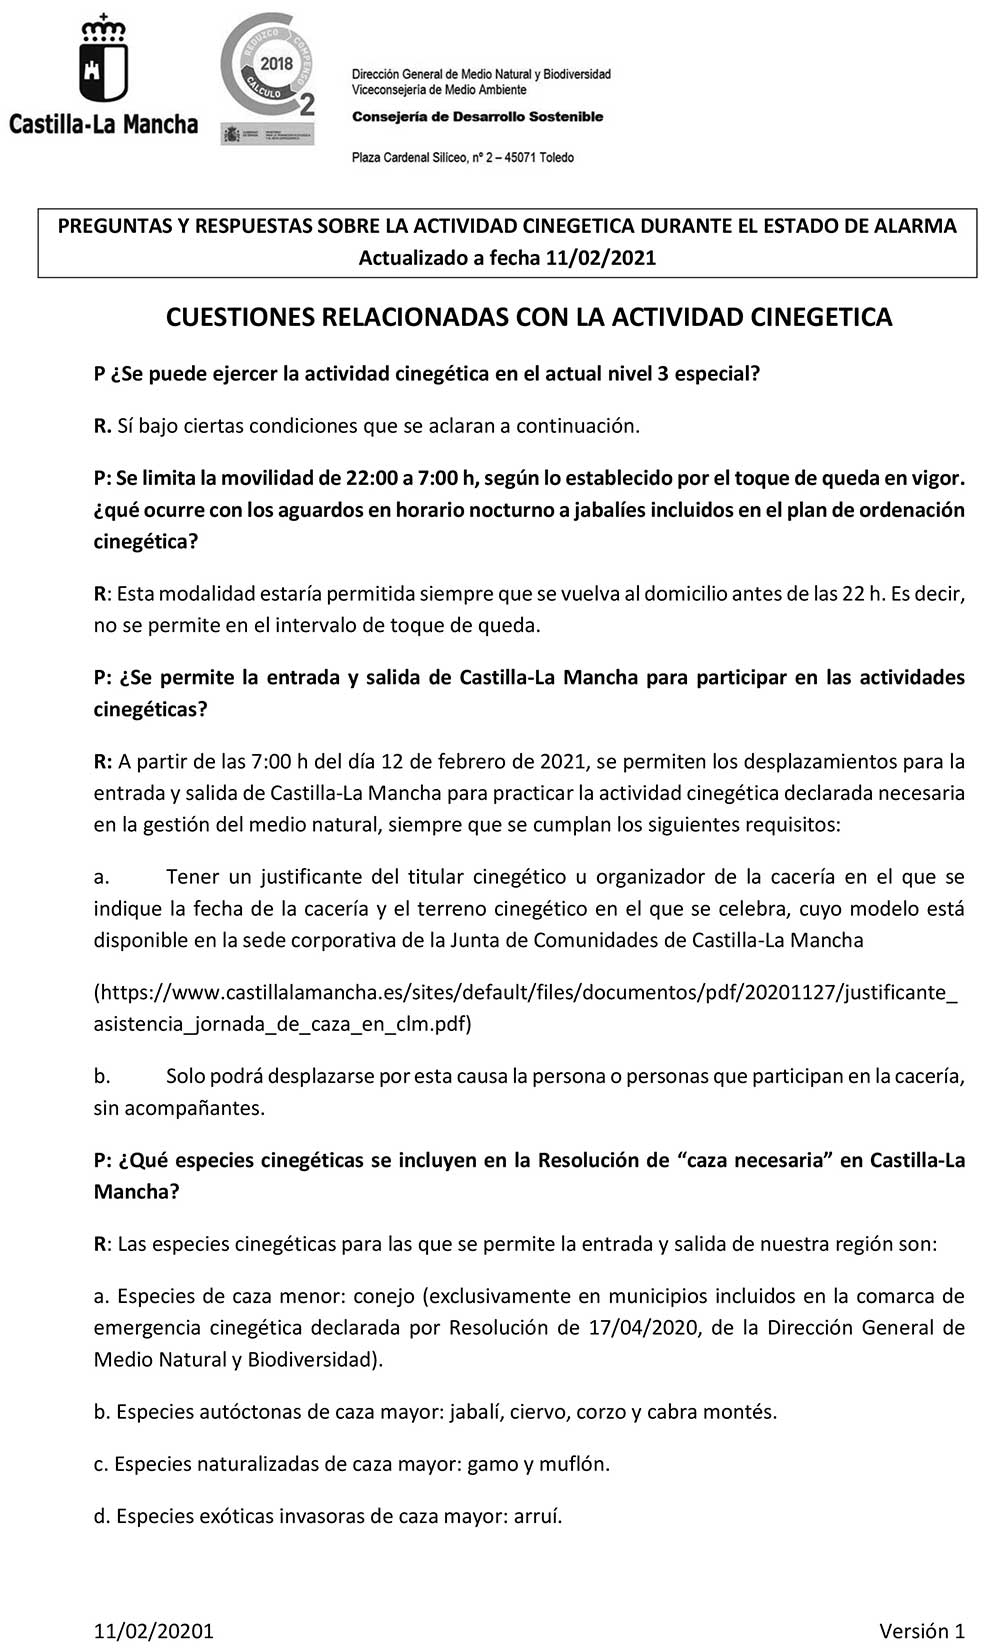 Preguntas y Respuestas sobre la actividad cinegética en Castilla la Mancha